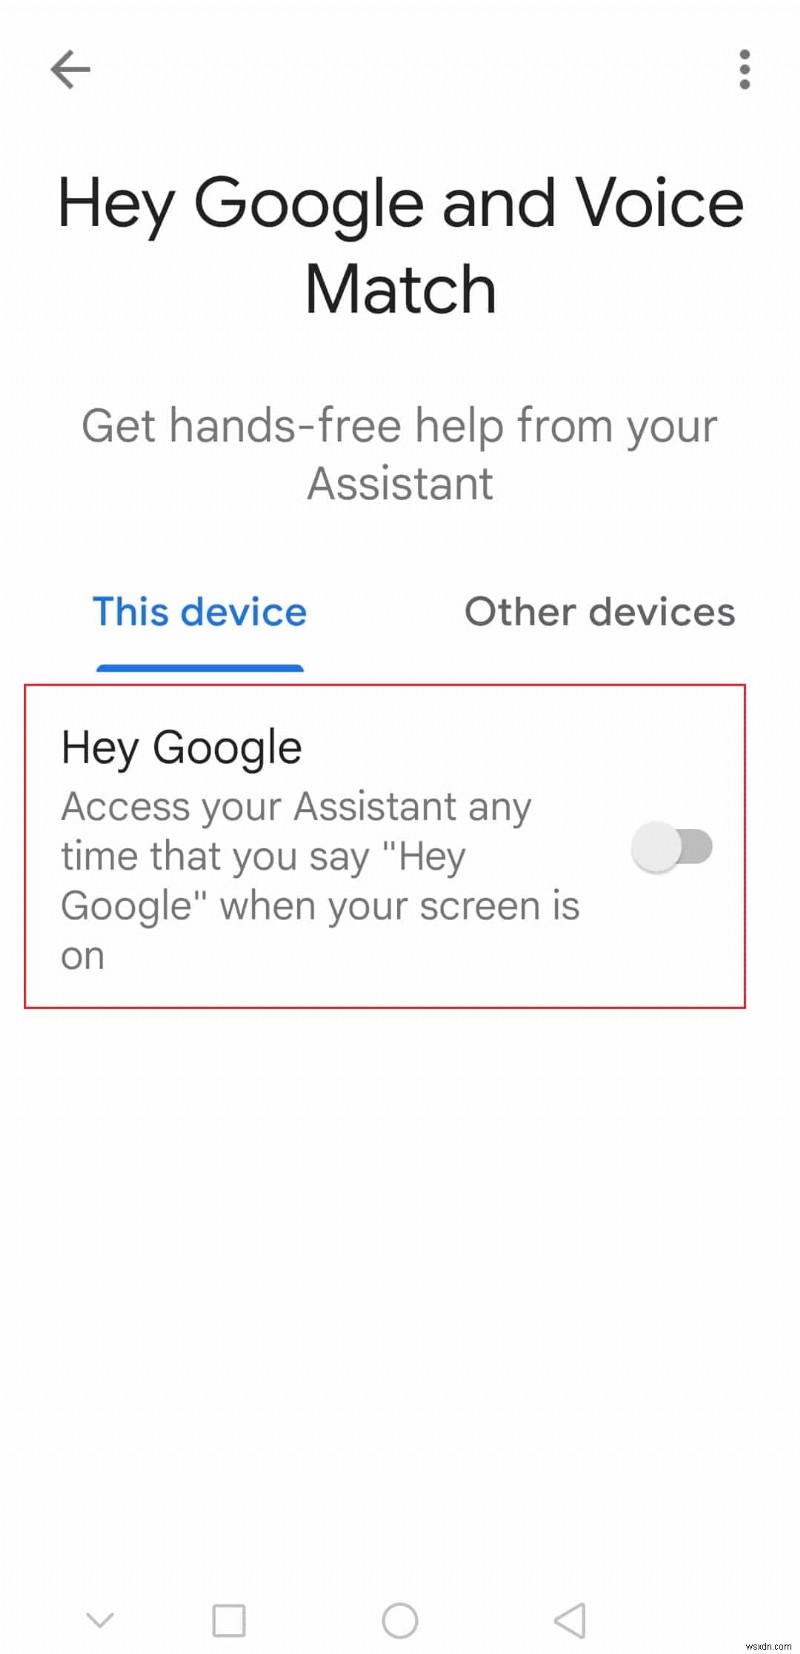 Android で Google アシスタントをオンまたはオフにする方法